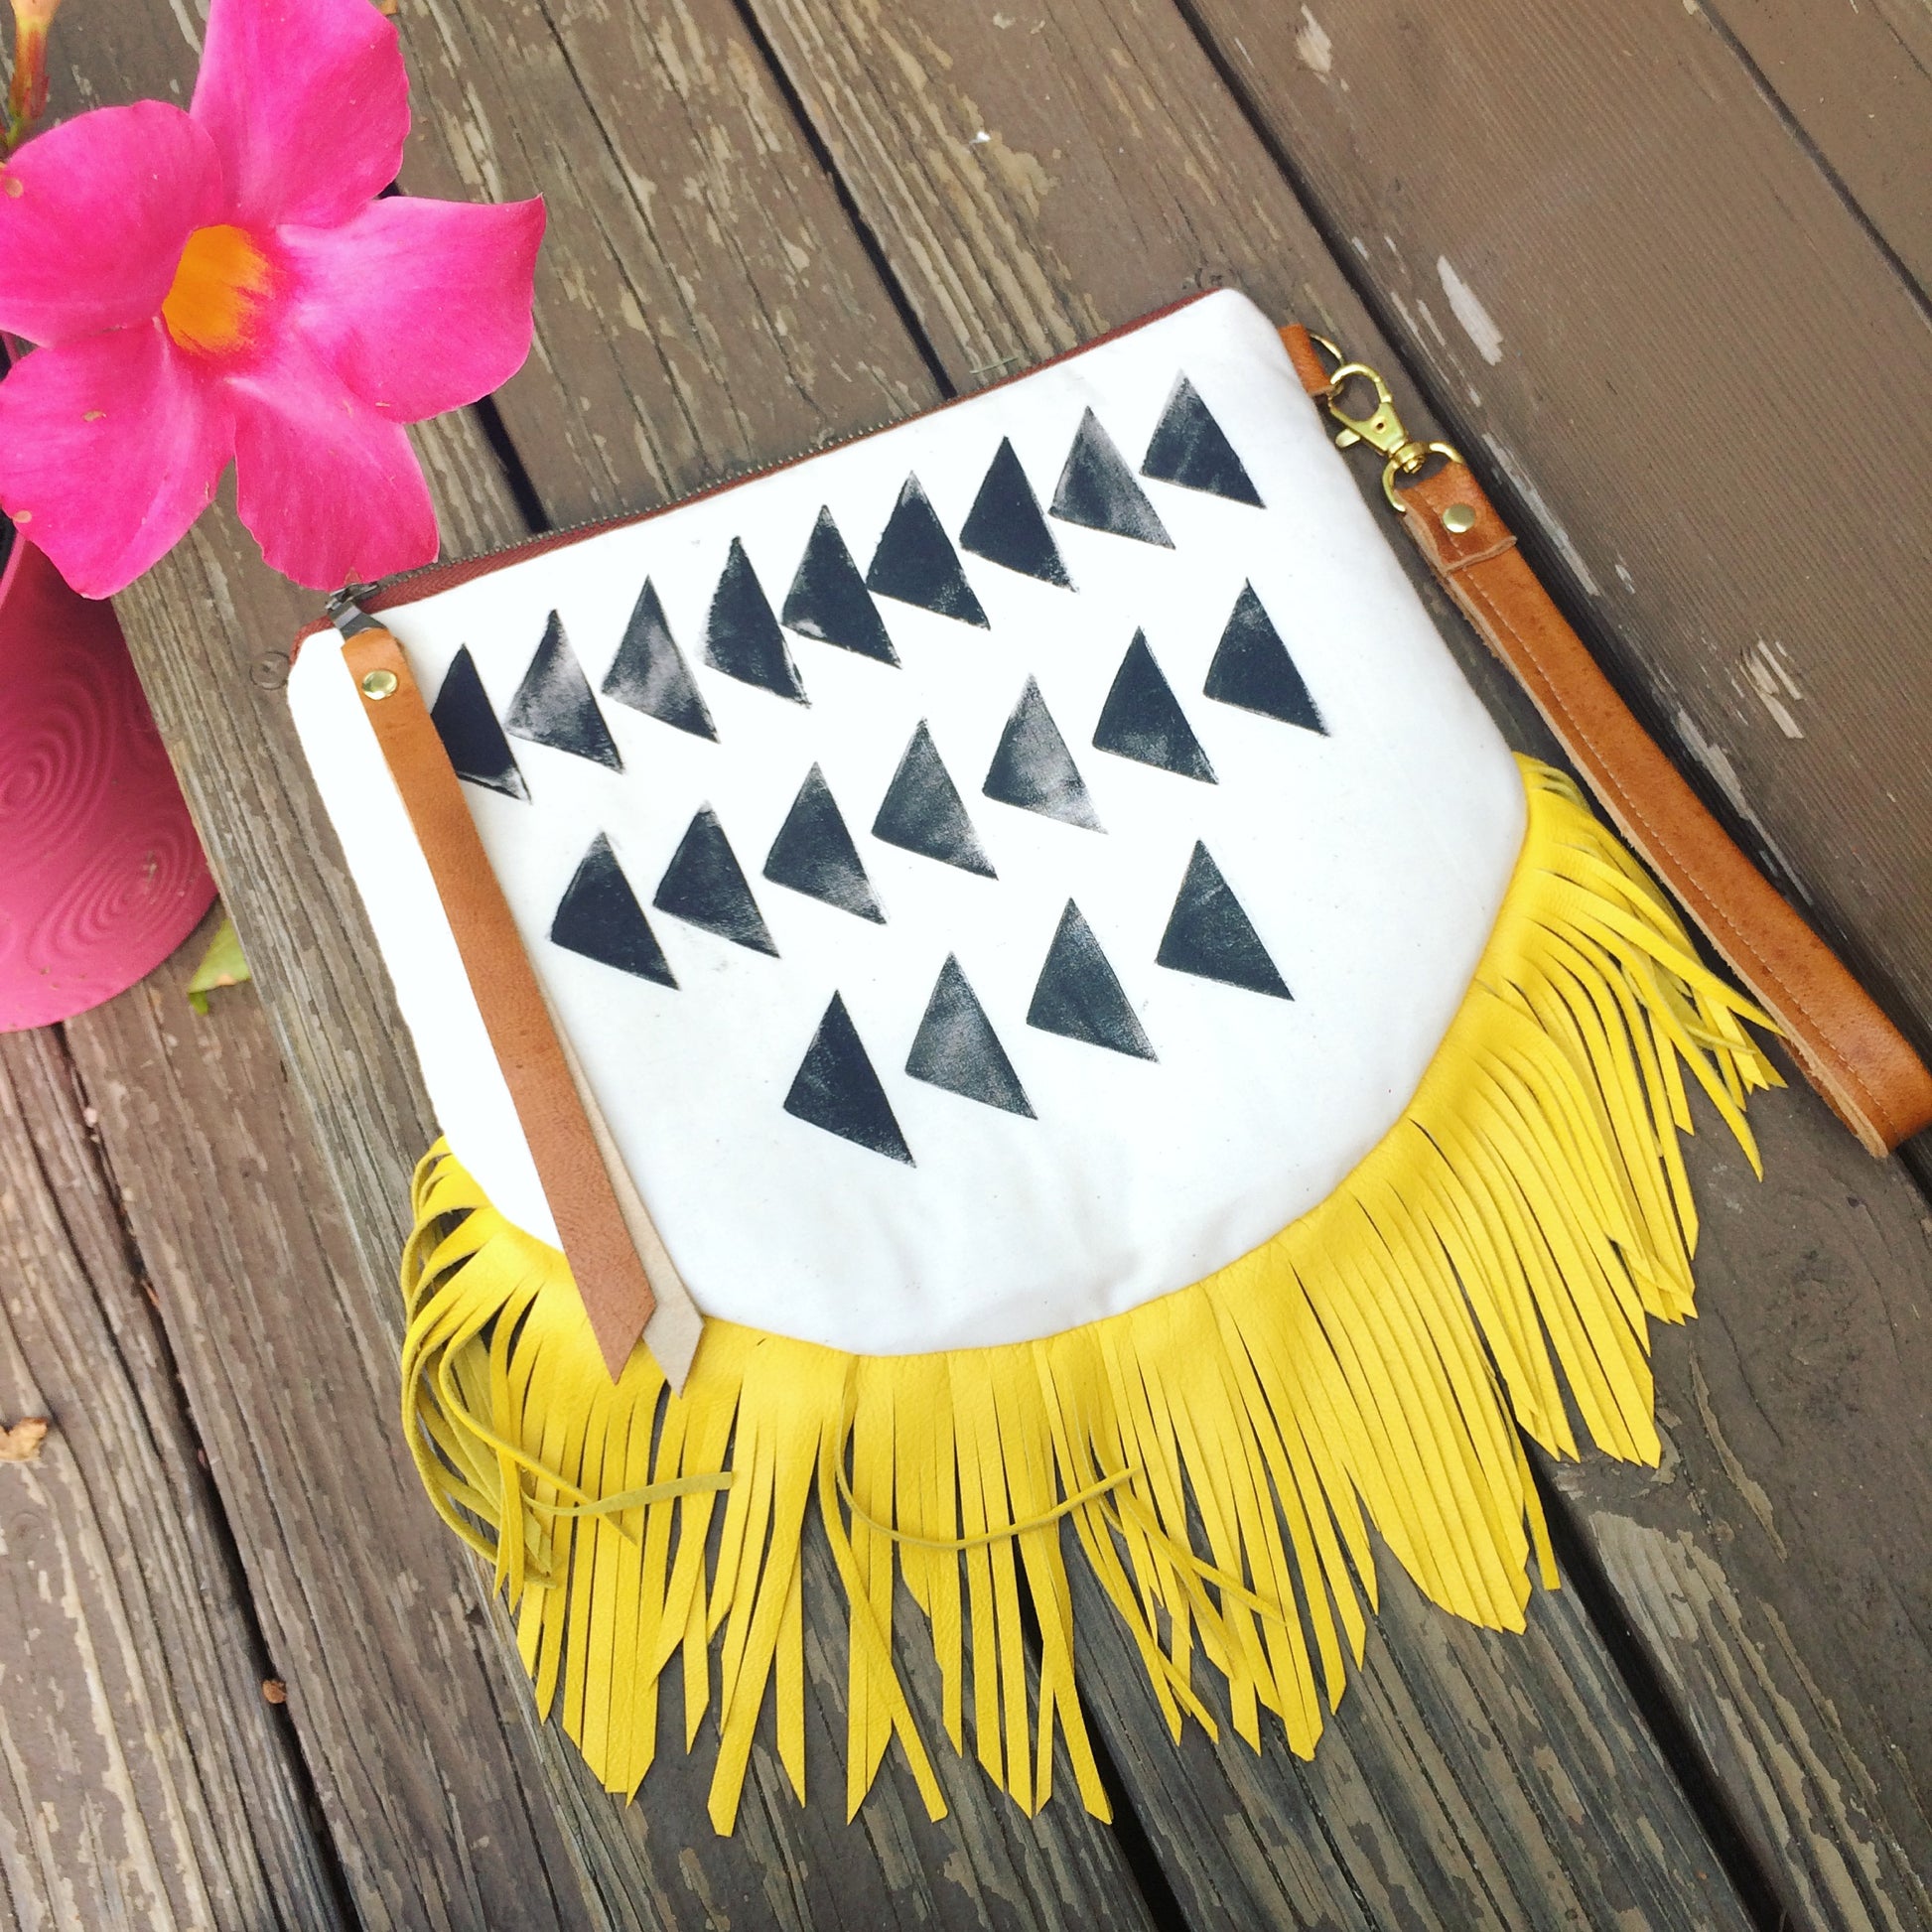 Melmax Design - Tribal, Boho Fringe Crossbody/clutch Bag - The Desert Paintbrush